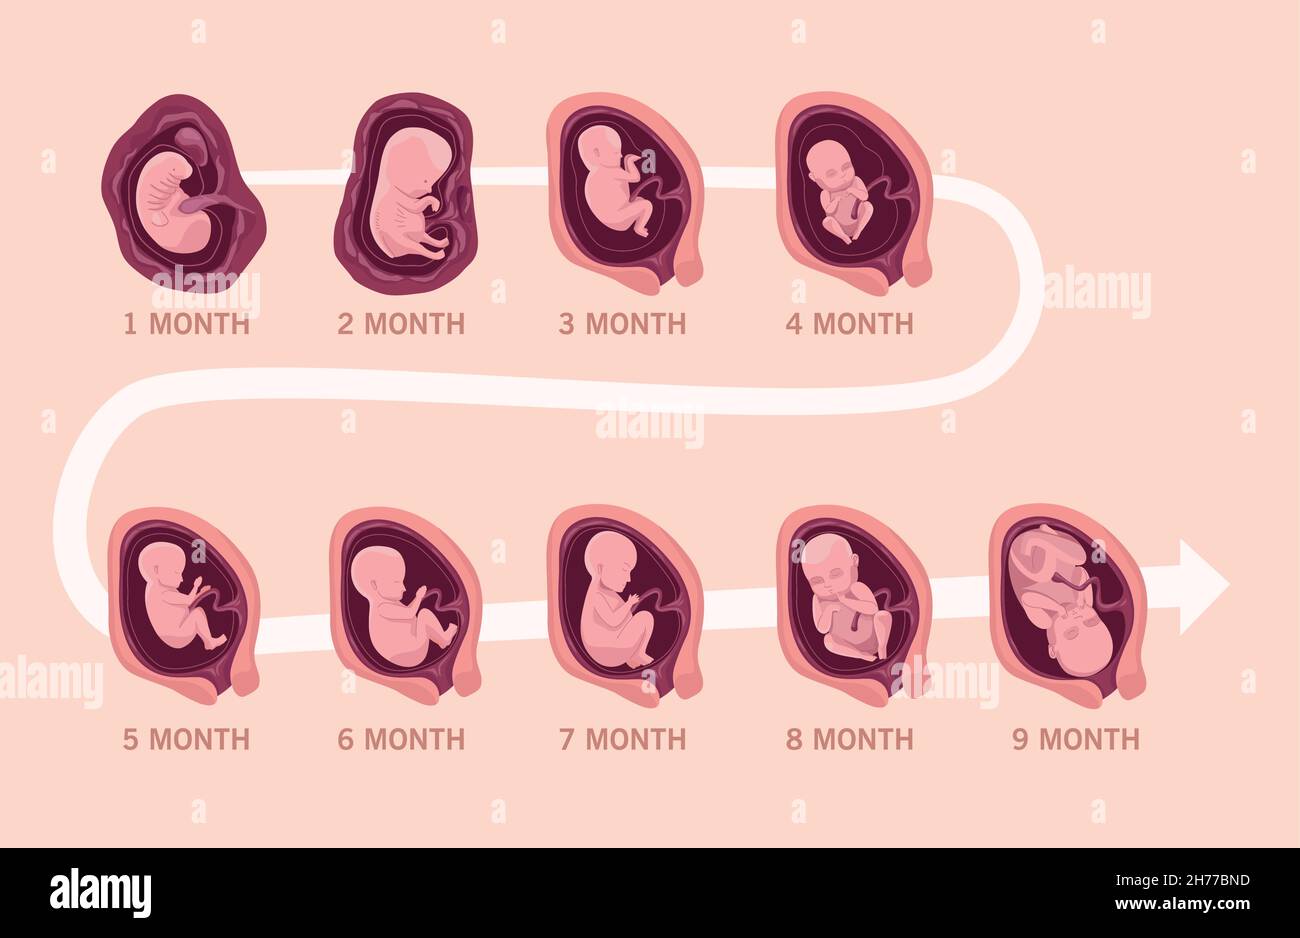 embryo development infographic Stock Vector